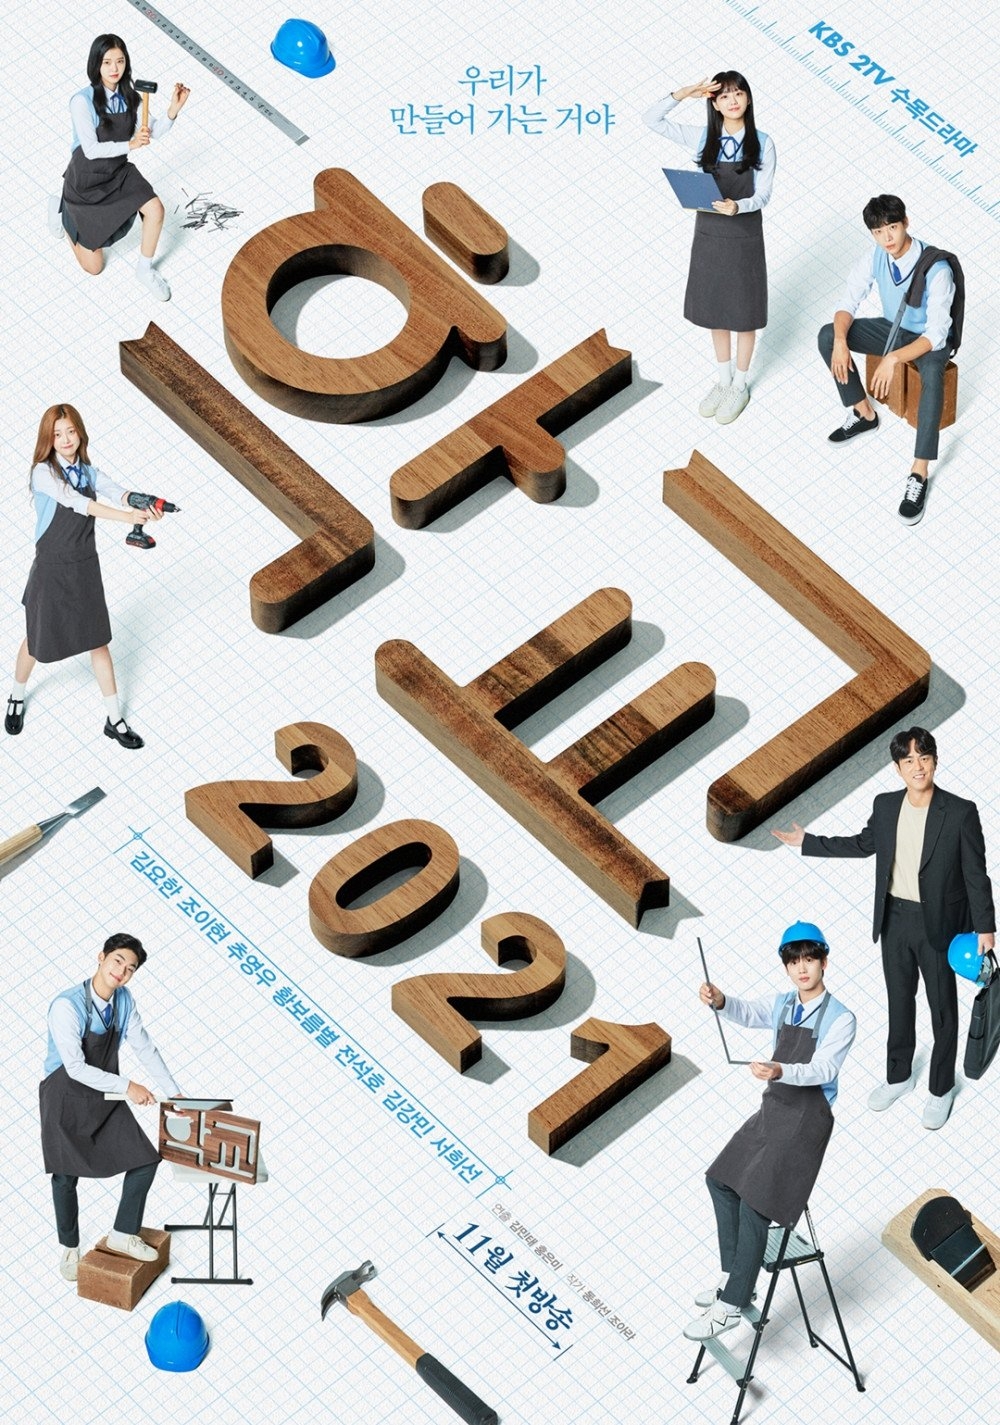 Sao Hàn ngày 22/10: Series học đường “School 2021” tung poster đầu tiên trước khi lên sóng